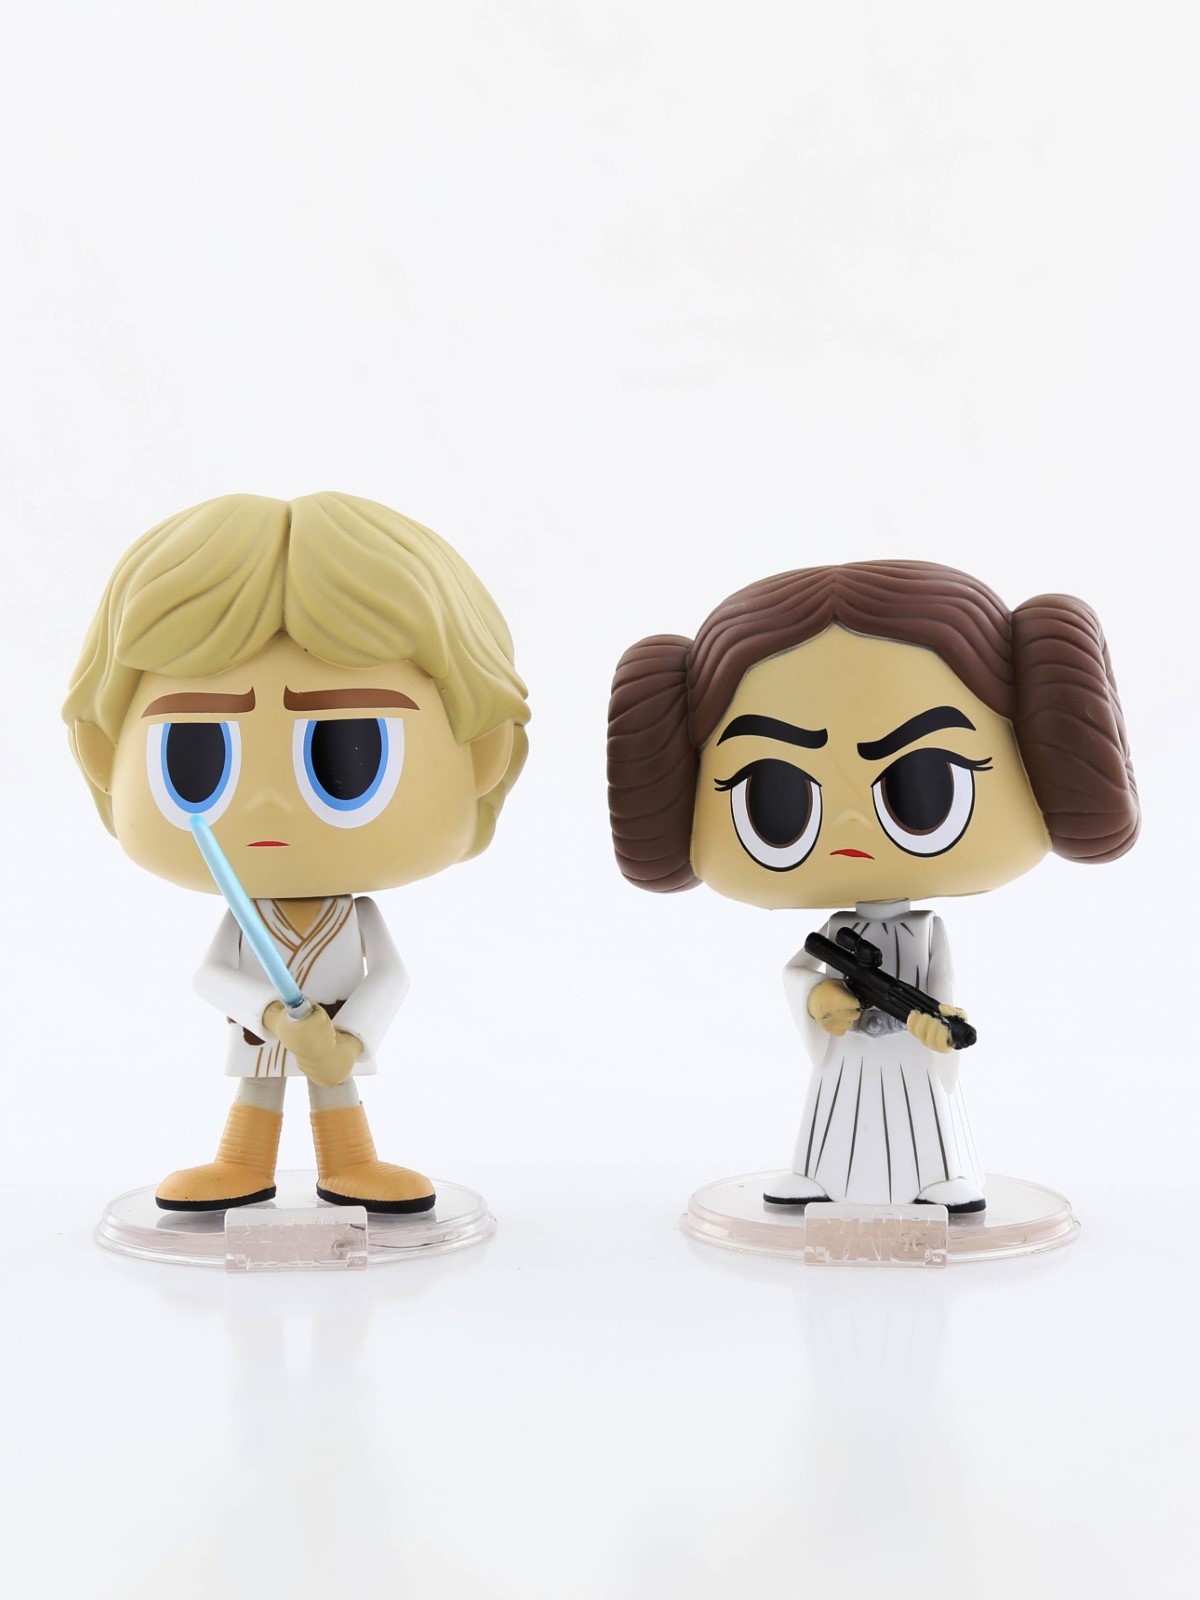 Funko Pop Star Wars Princess Leia & Luke Skywalker Vinyl Figures (2 Pack)